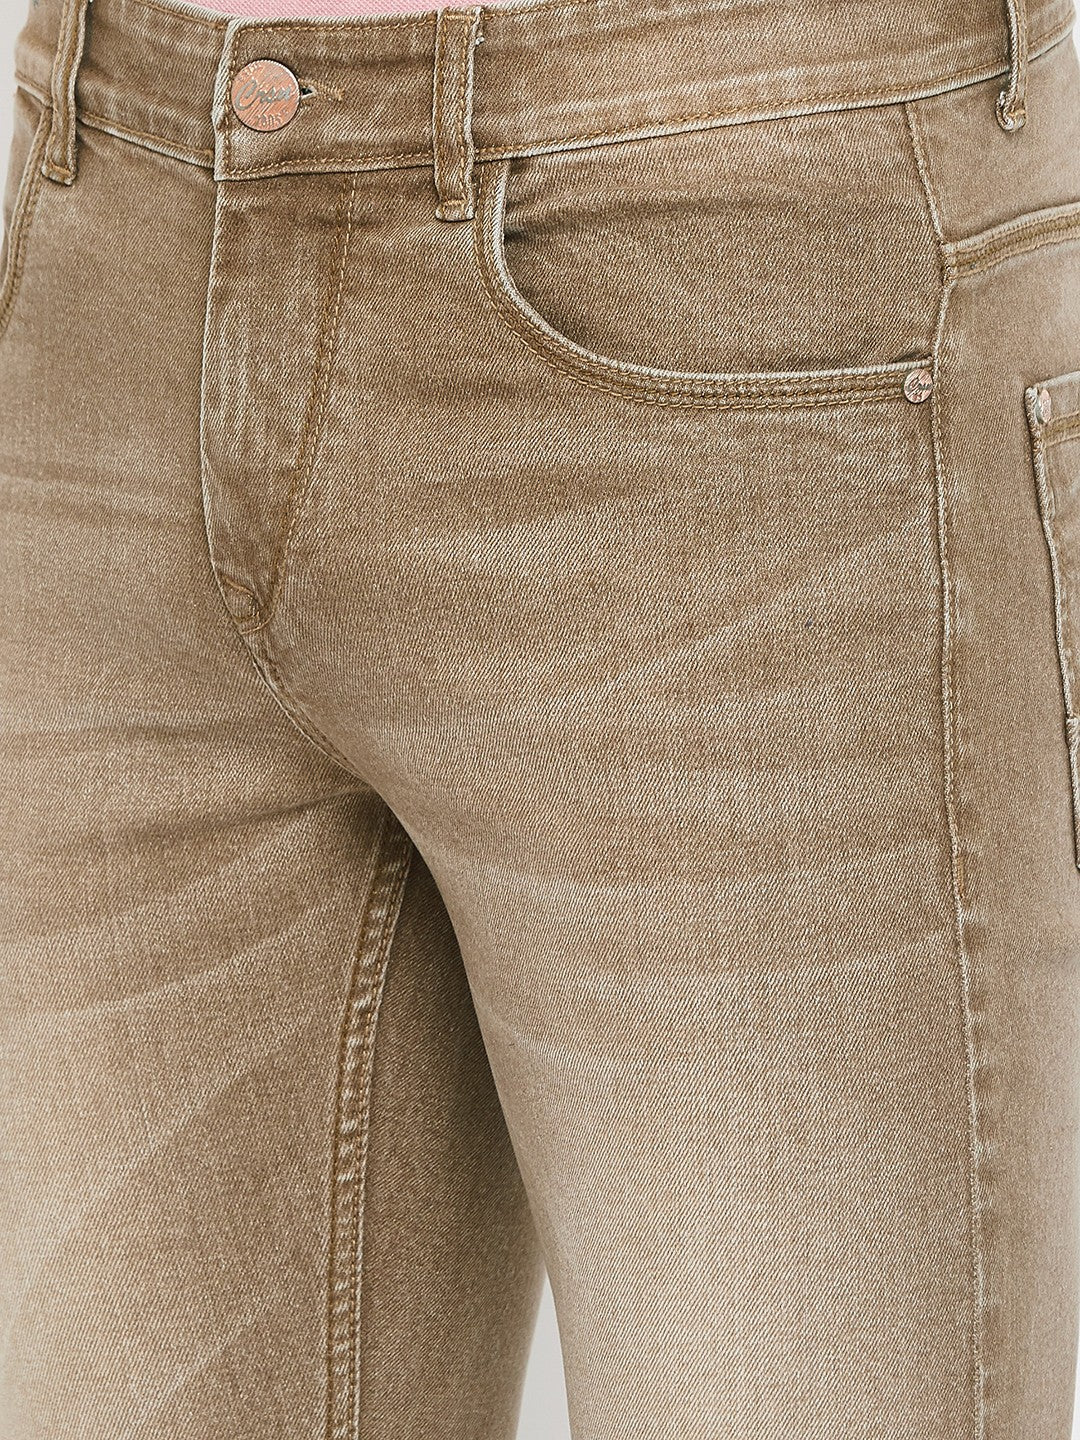 Khaki Slim Fit Jeans - Men Jeans